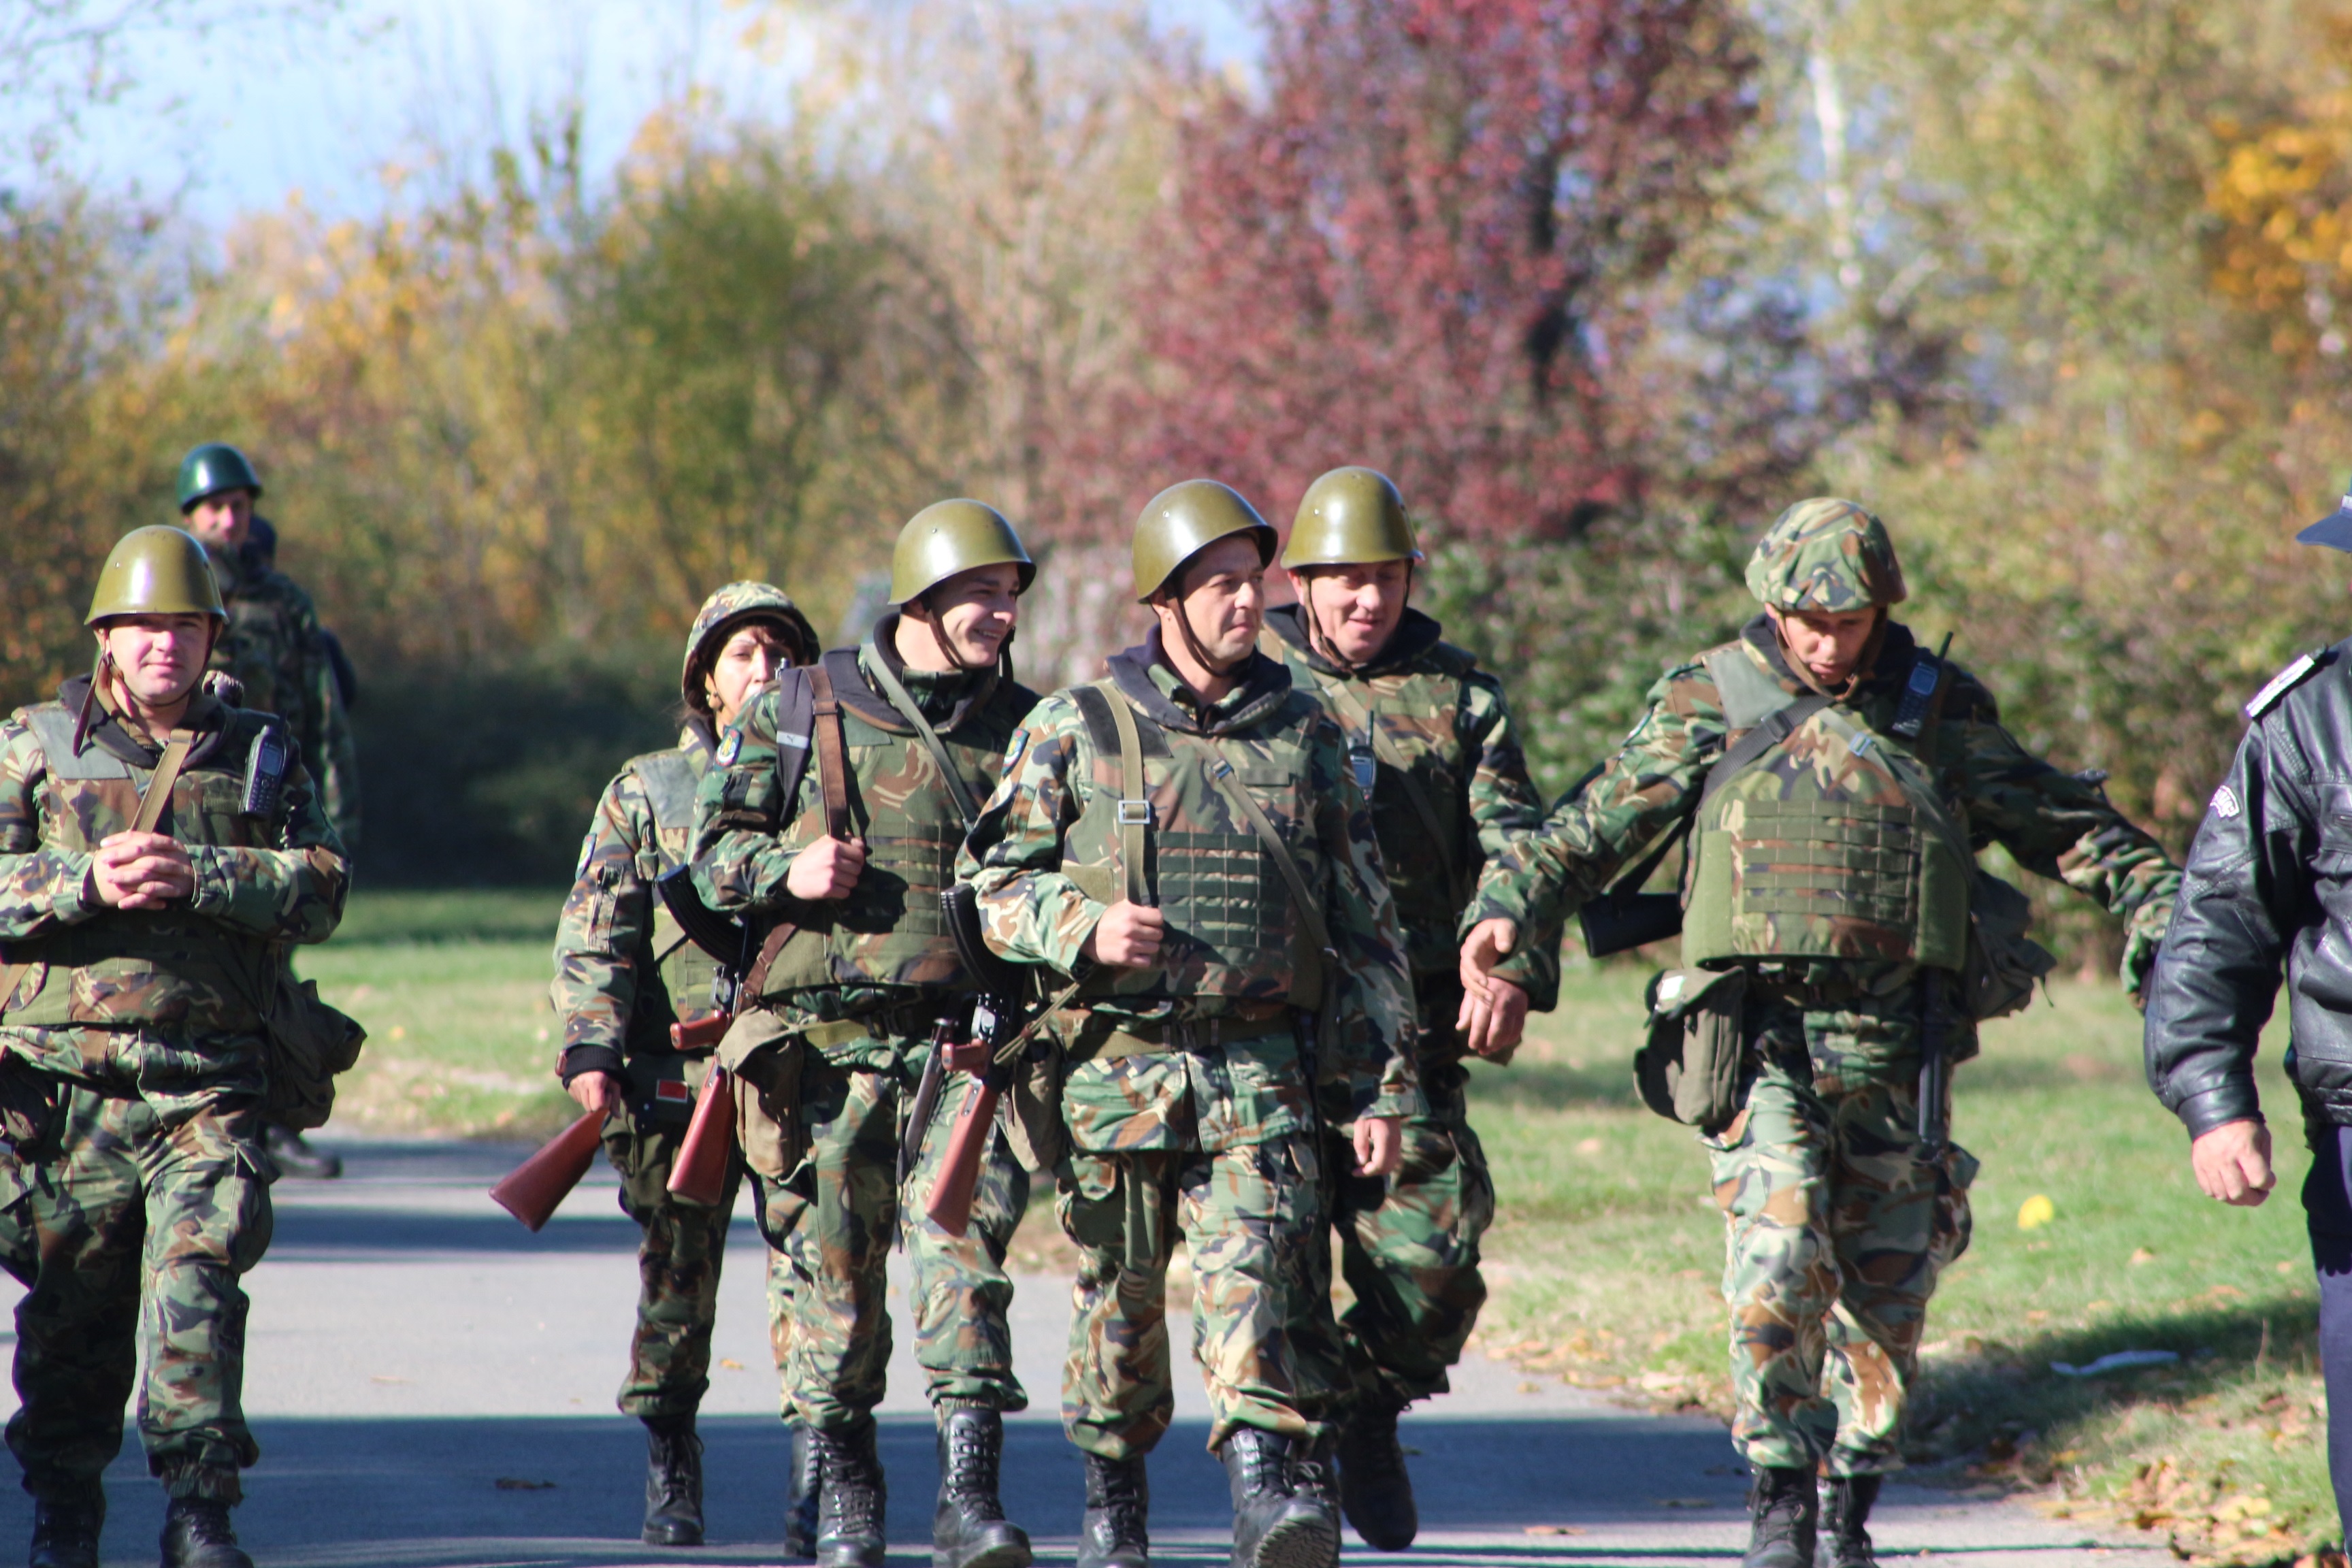 Съвместно учение между полиция, пожарна и военни се проведе в Казанлък. Темата бе терористичен акт на градския стадион.